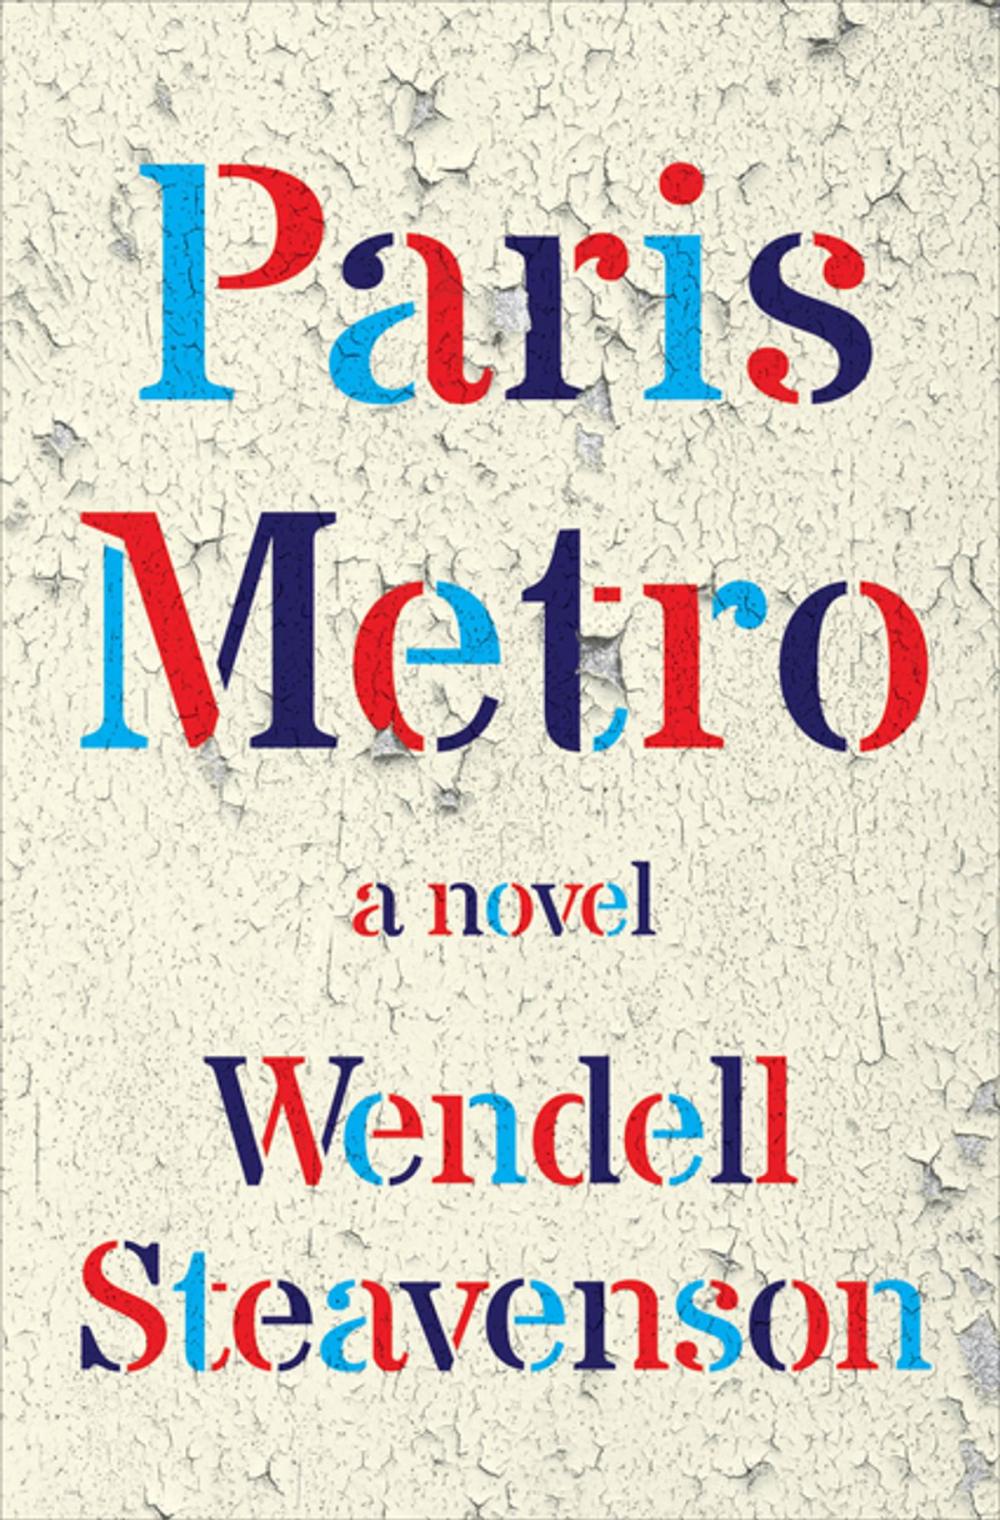 Big bigCover of Paris Metro: A Novel